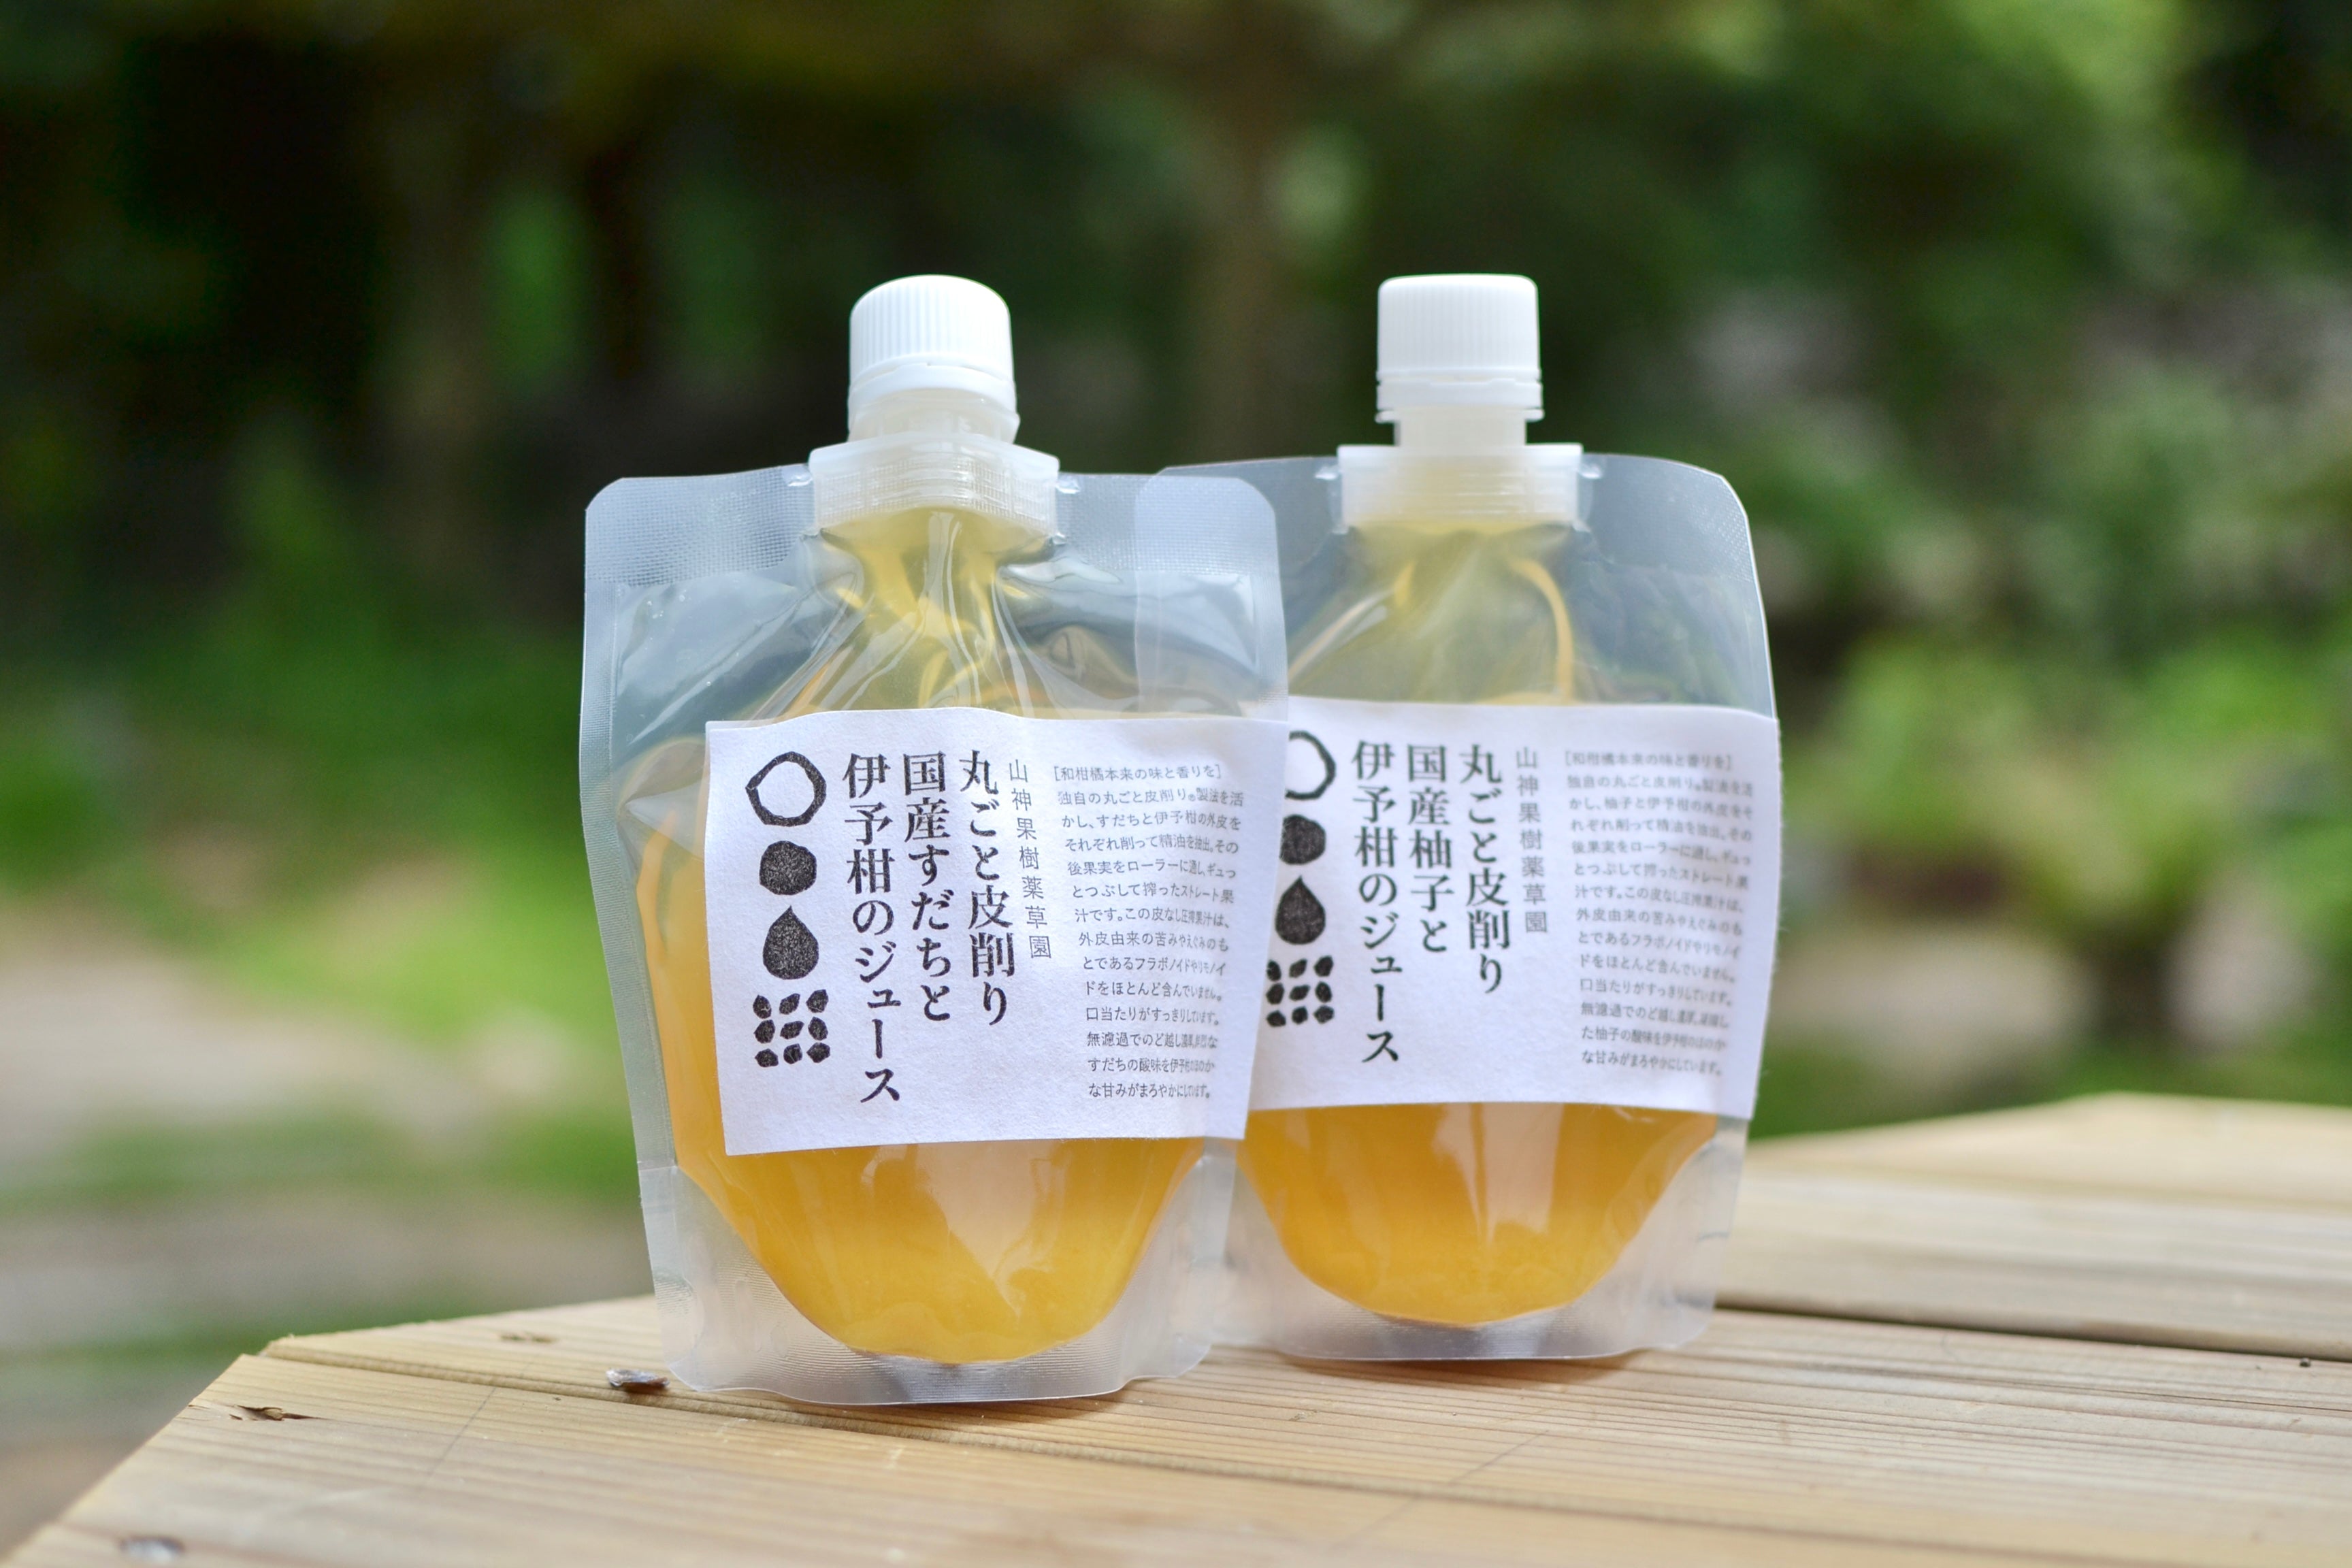 丸ごと皮削りすだちと伊予柑のジュース200ml MARKS&amp;WEB 松山油脂の山神果樹薬草園